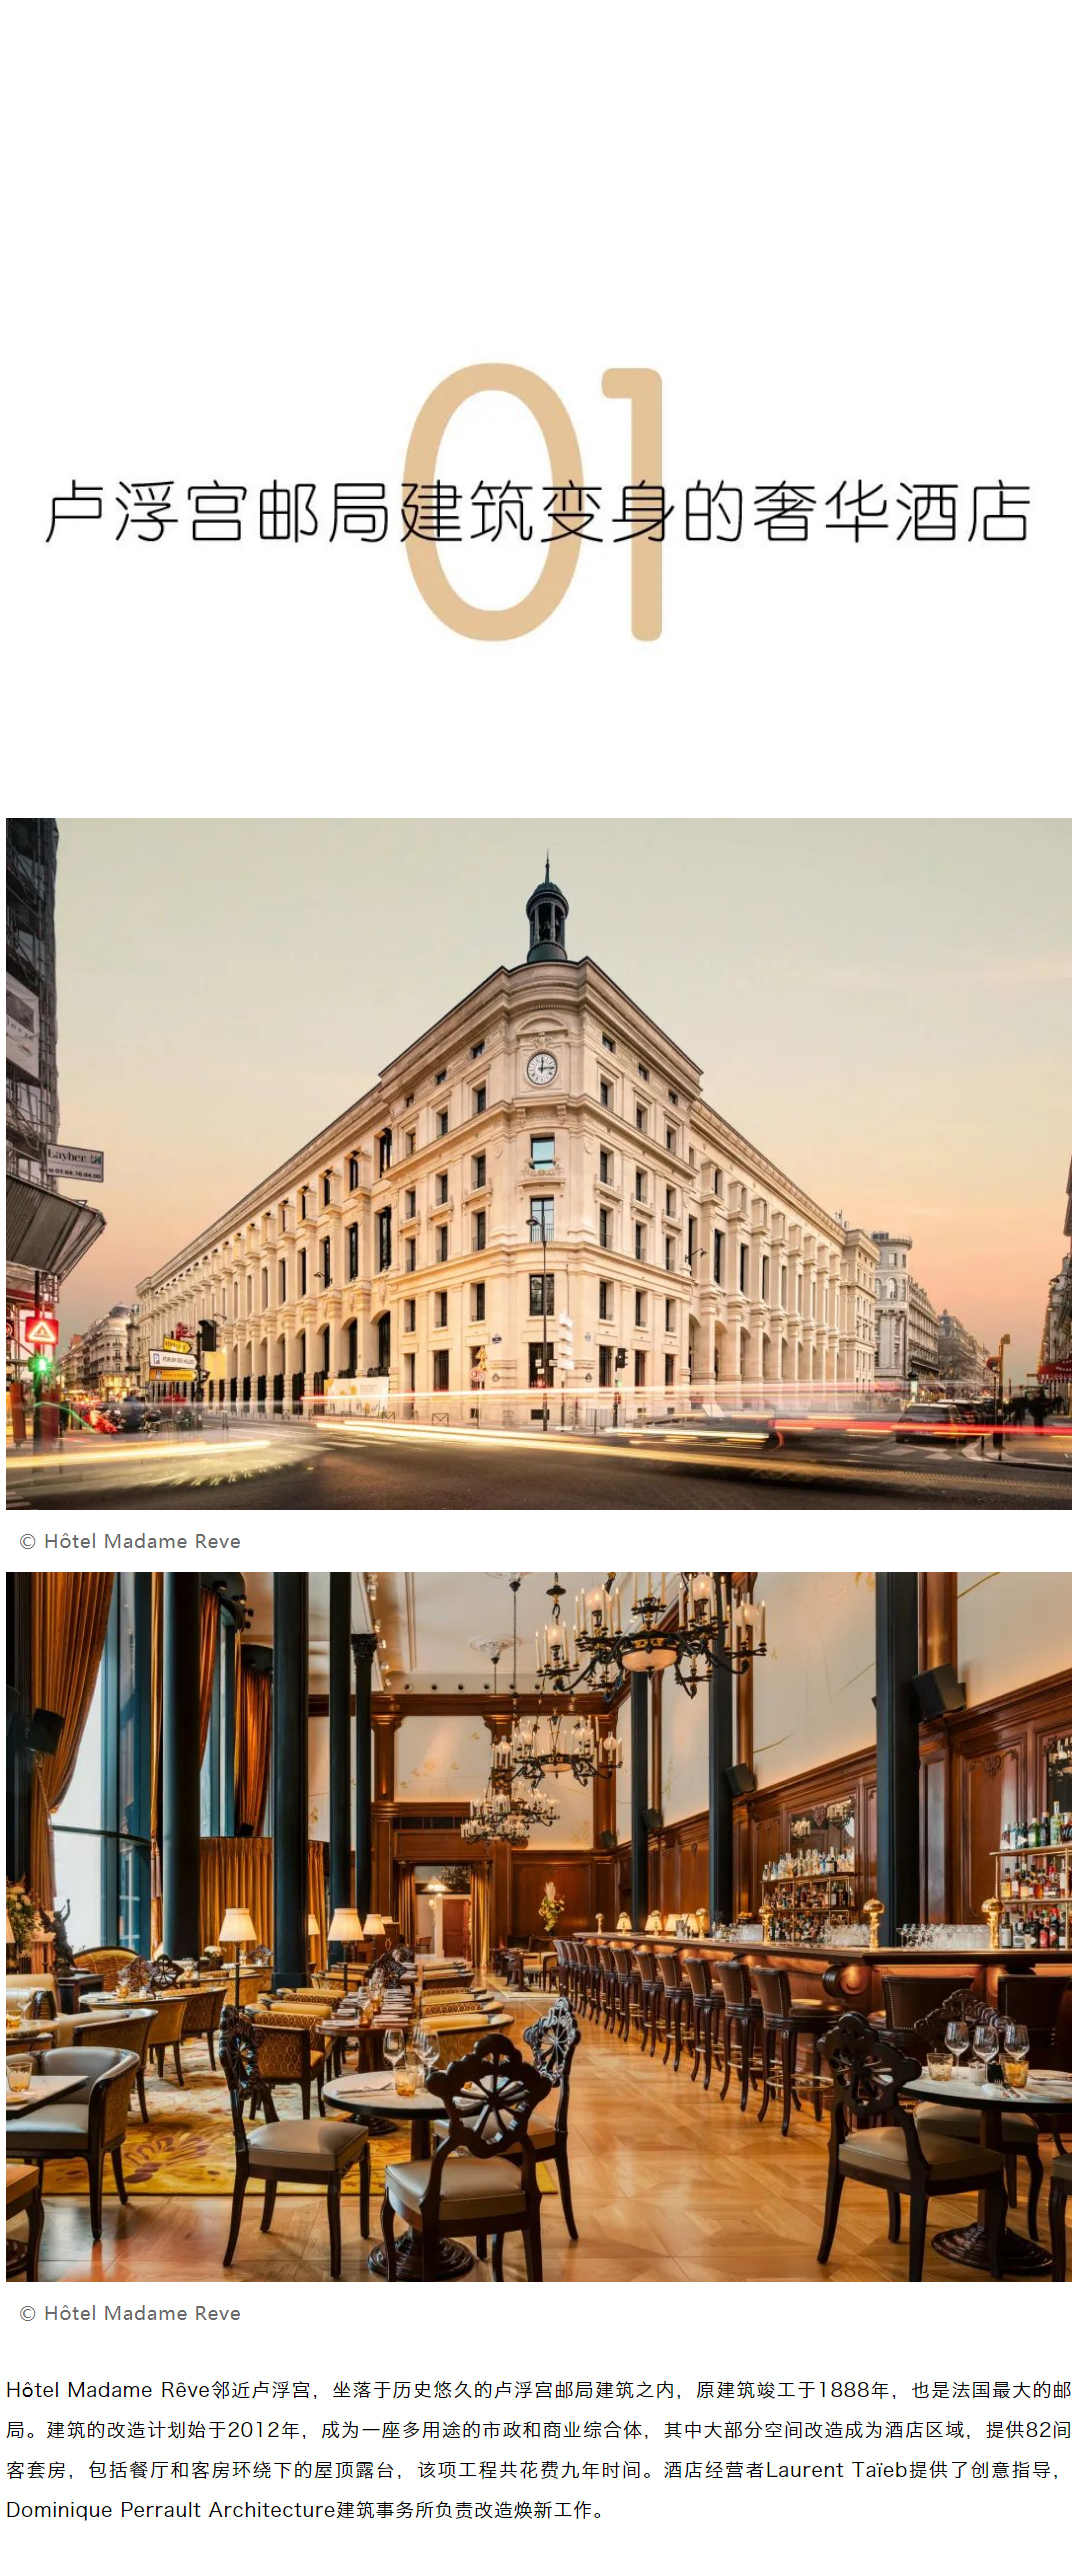 从邮局、老旧建筑变身而来的创意设计酒店_0002_图层-3.jpg